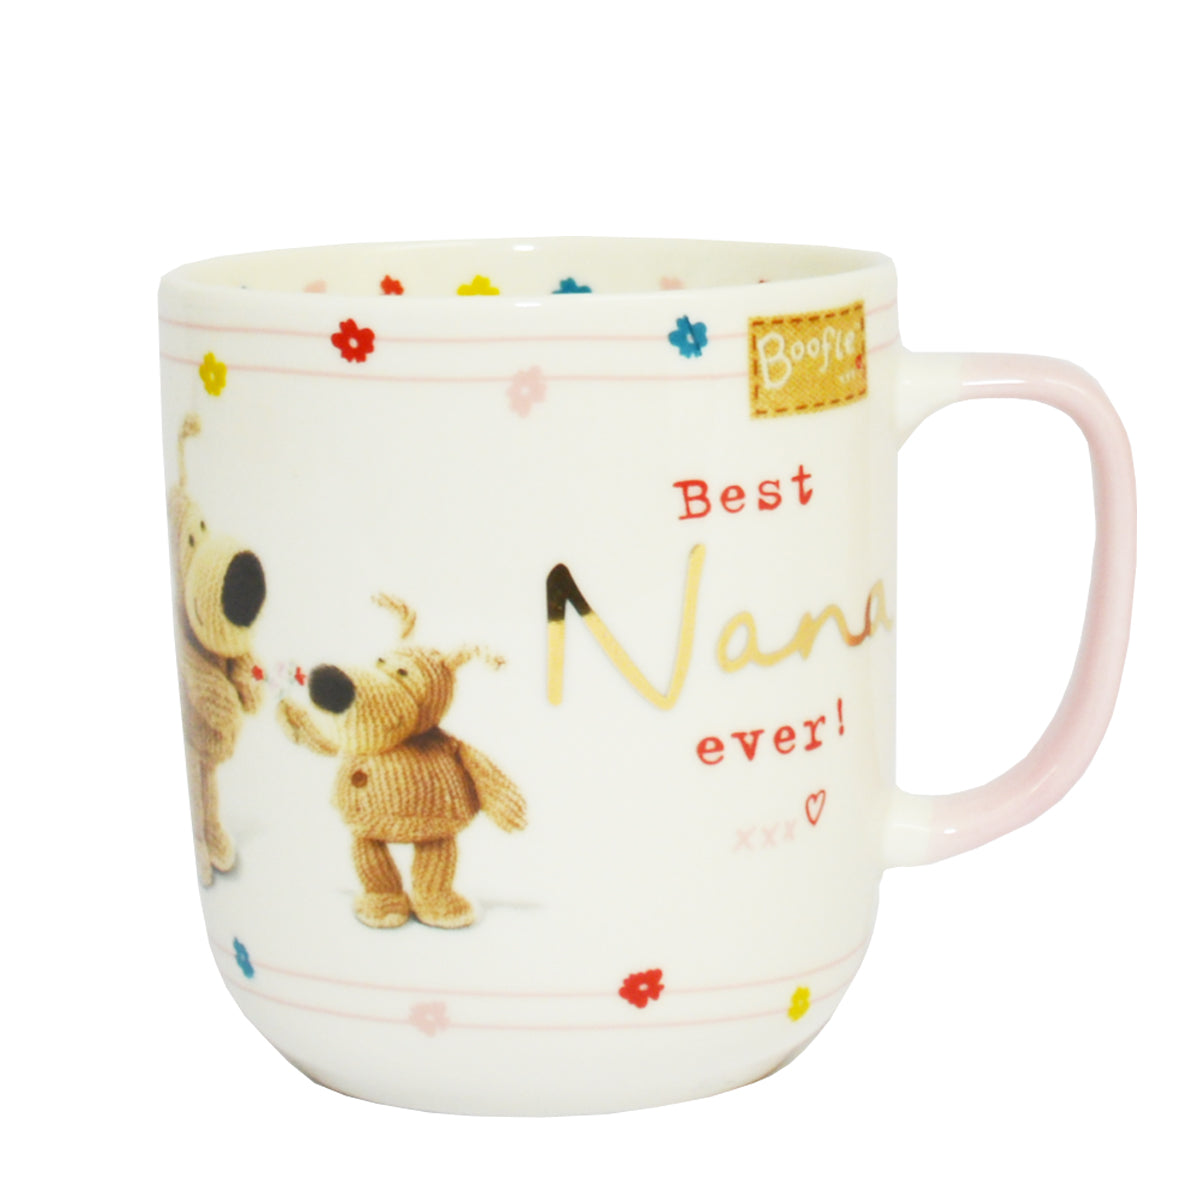 Best Nana Ever! Boofle Mug In Gift Box